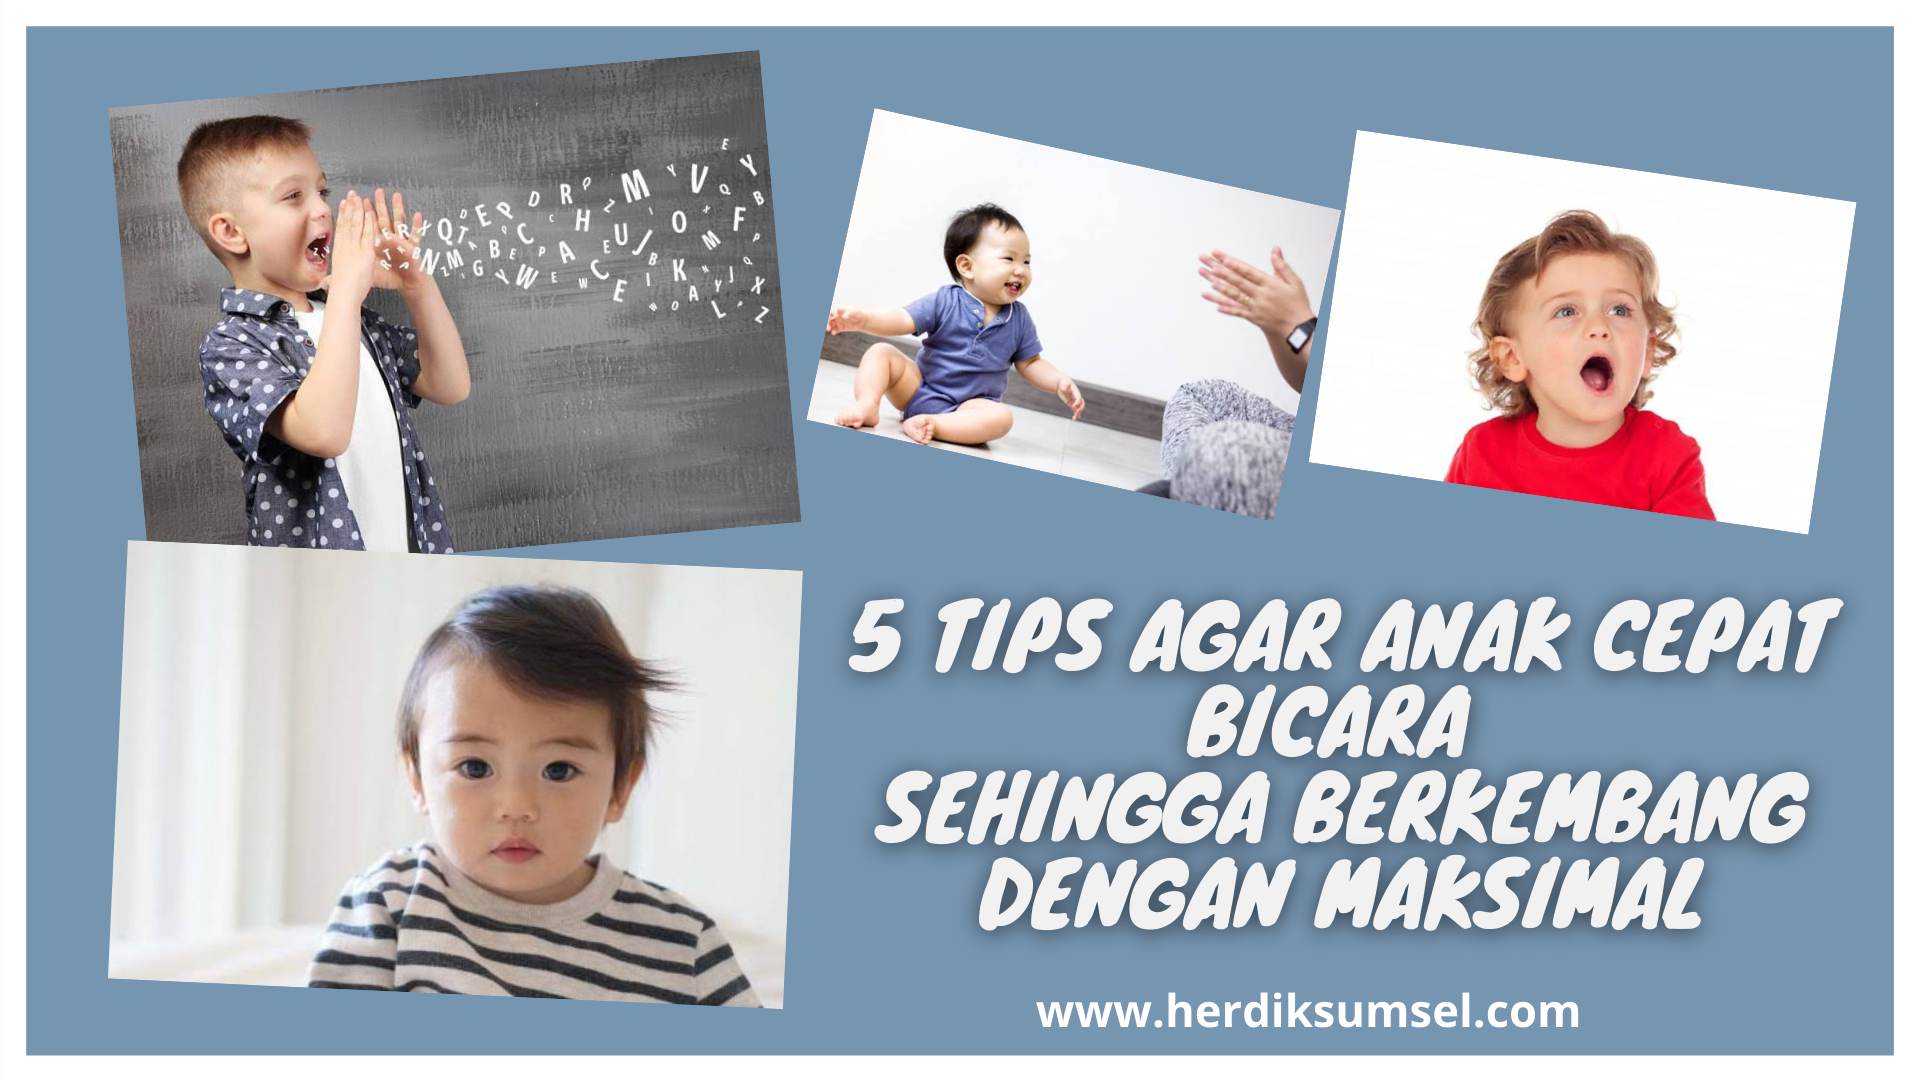 5 Tips Agar Anak Cepat Bicara Sehingga Bekembang Dengan Maksimal